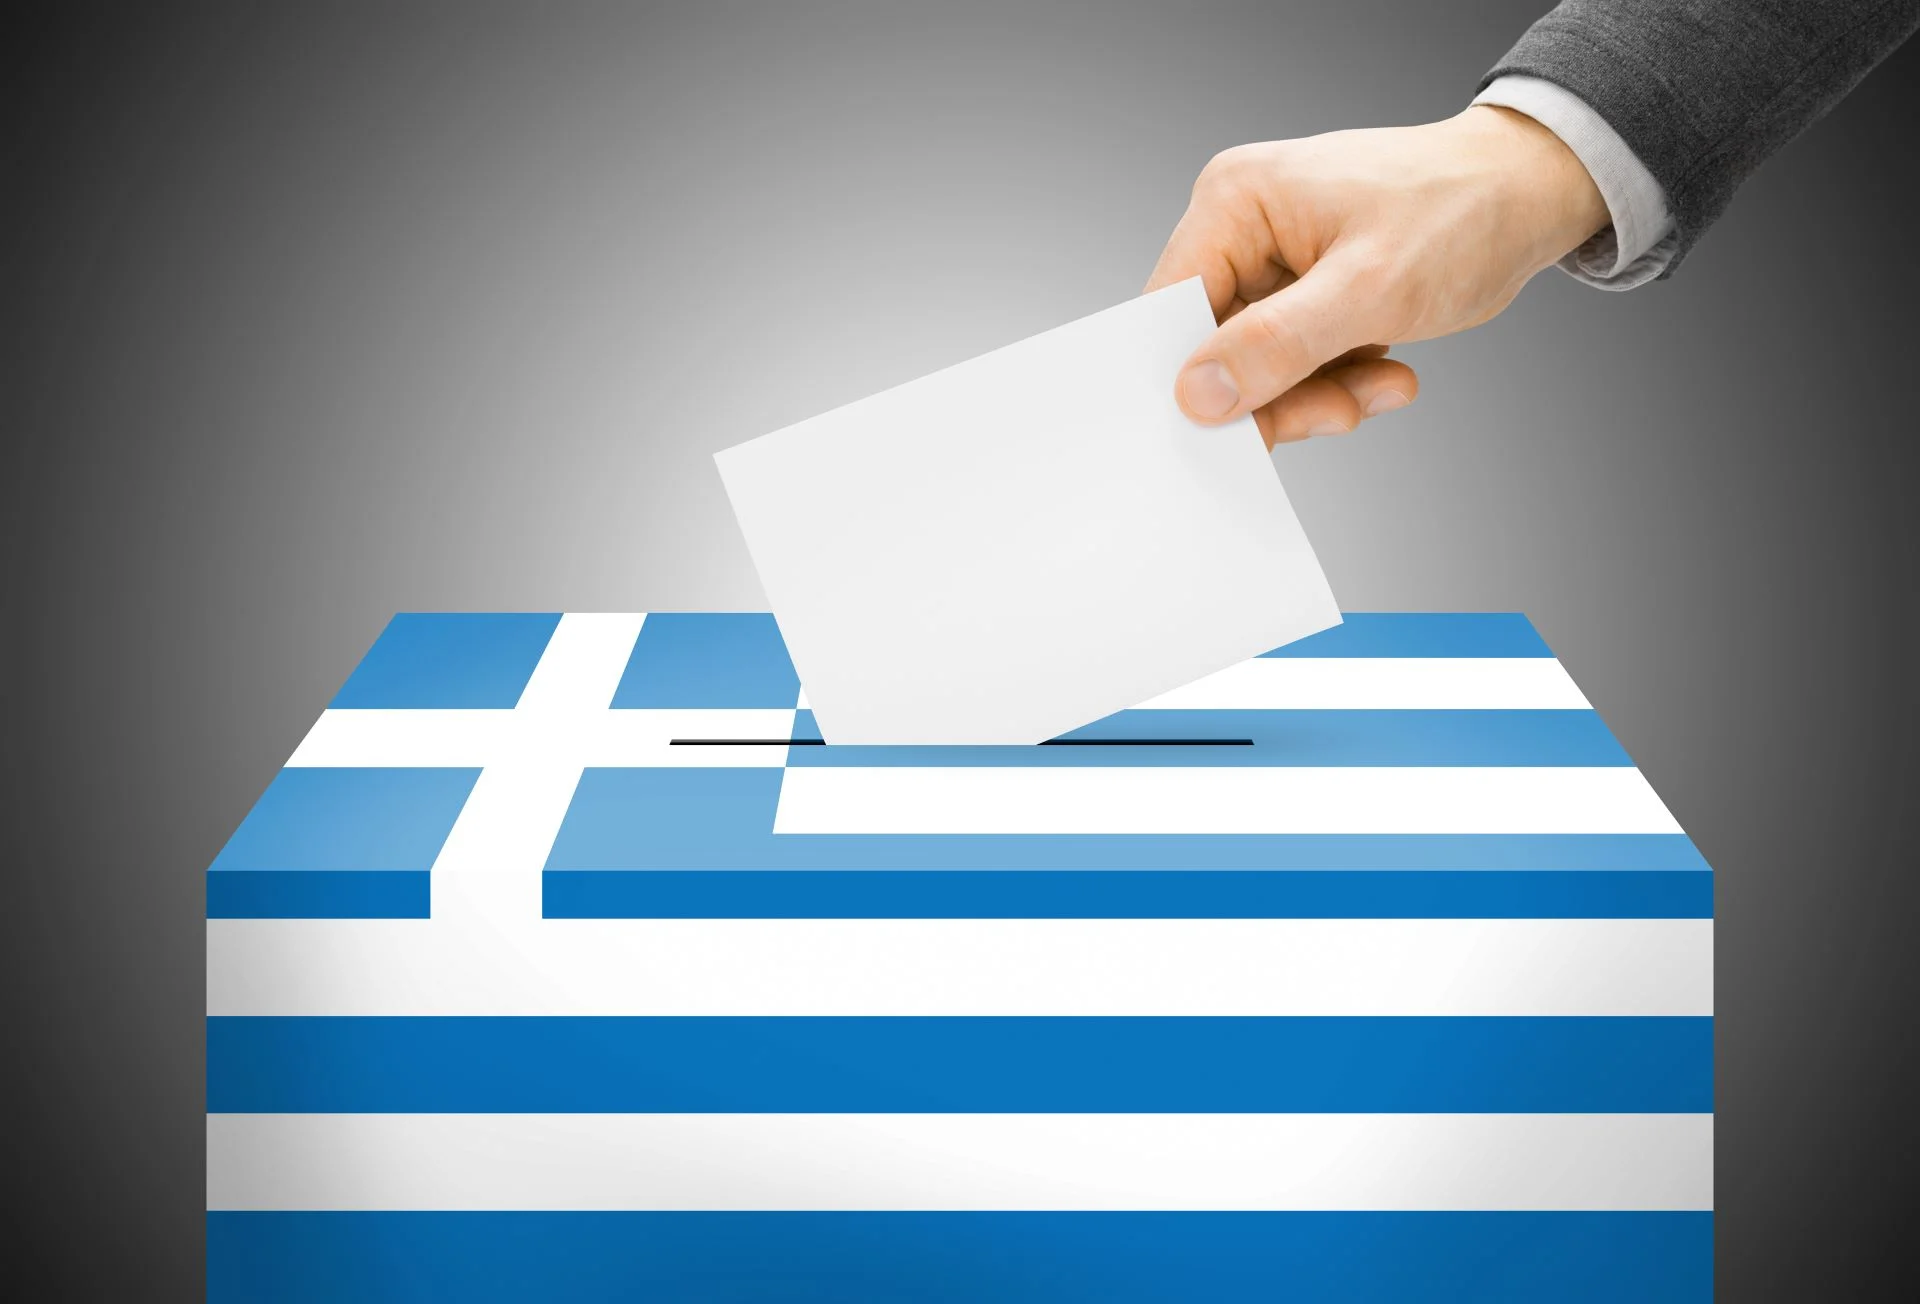 Στις 21 Μαΐου η προθεσμία για την εγγραφή των αποδήμων προκειμένου να ψηφίσουν στις… δεύτερες εκλογές